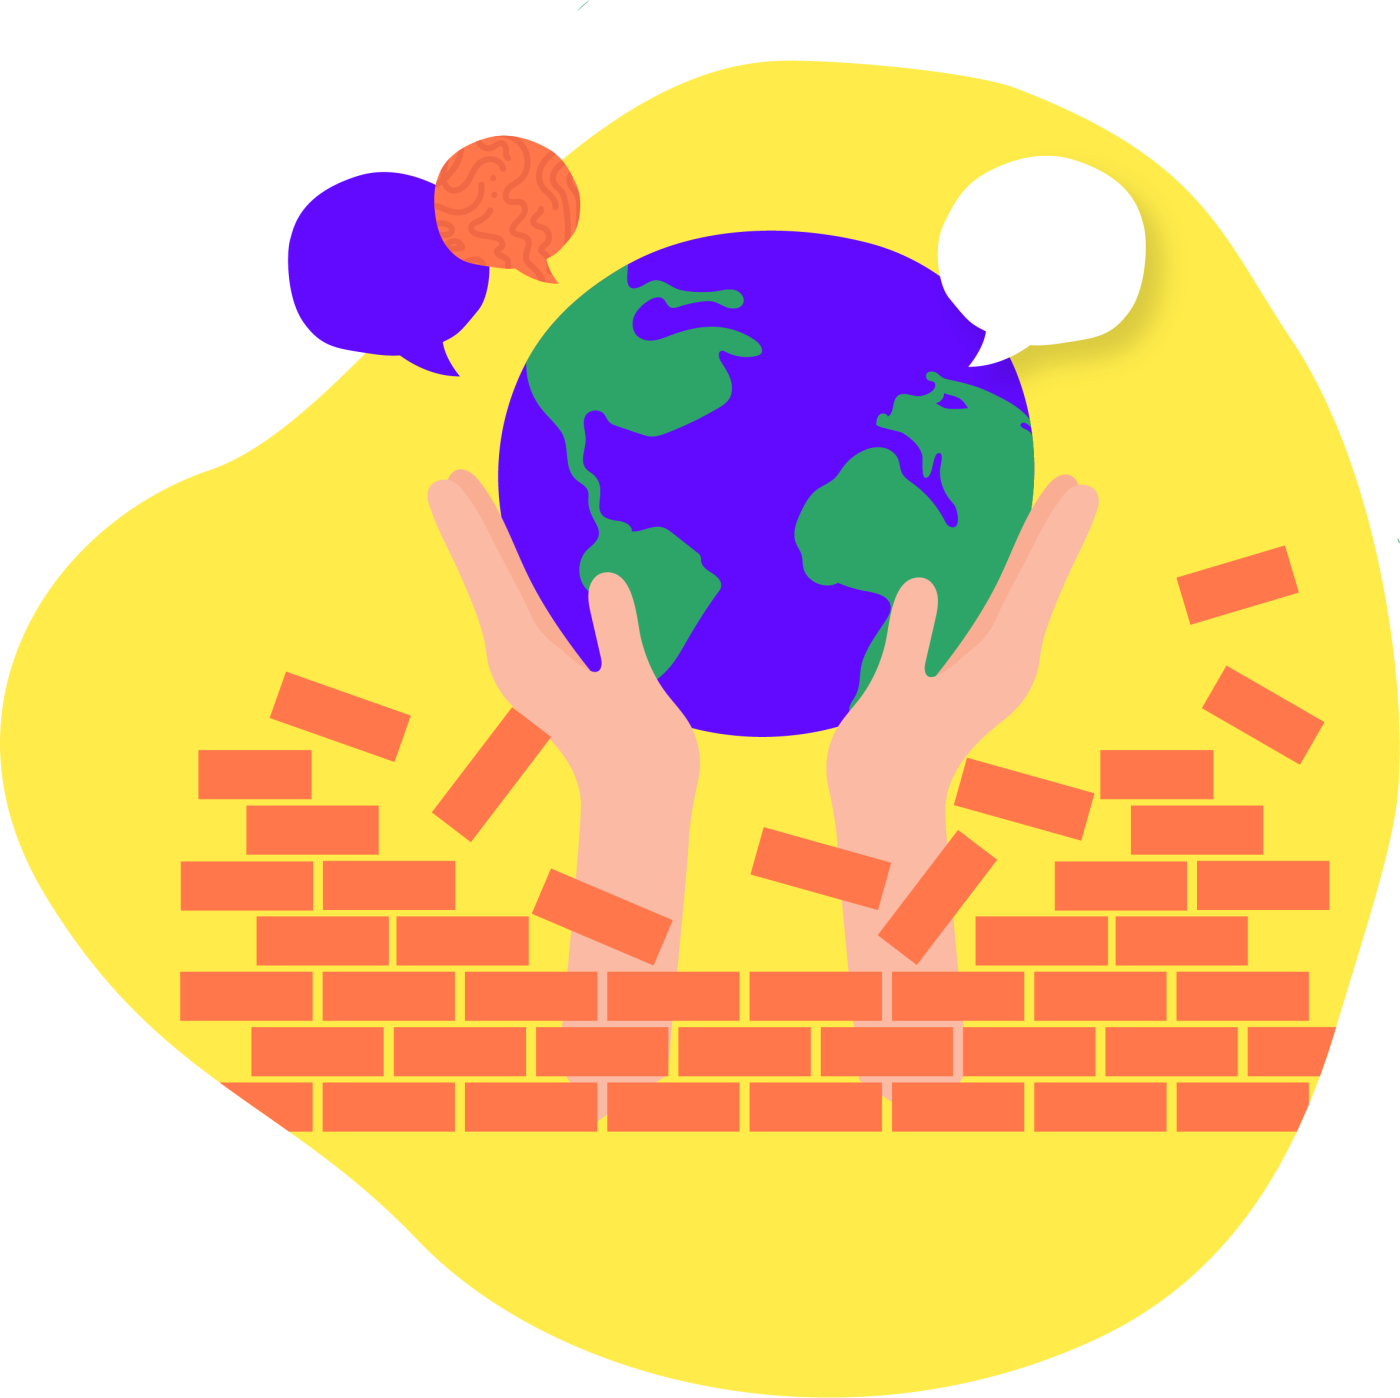 Dos manos se abren paso a través de una pared de ladrillos, sosteniendo un globo terráqueo violeta y verde del que salen tres burbujas de diálogo.